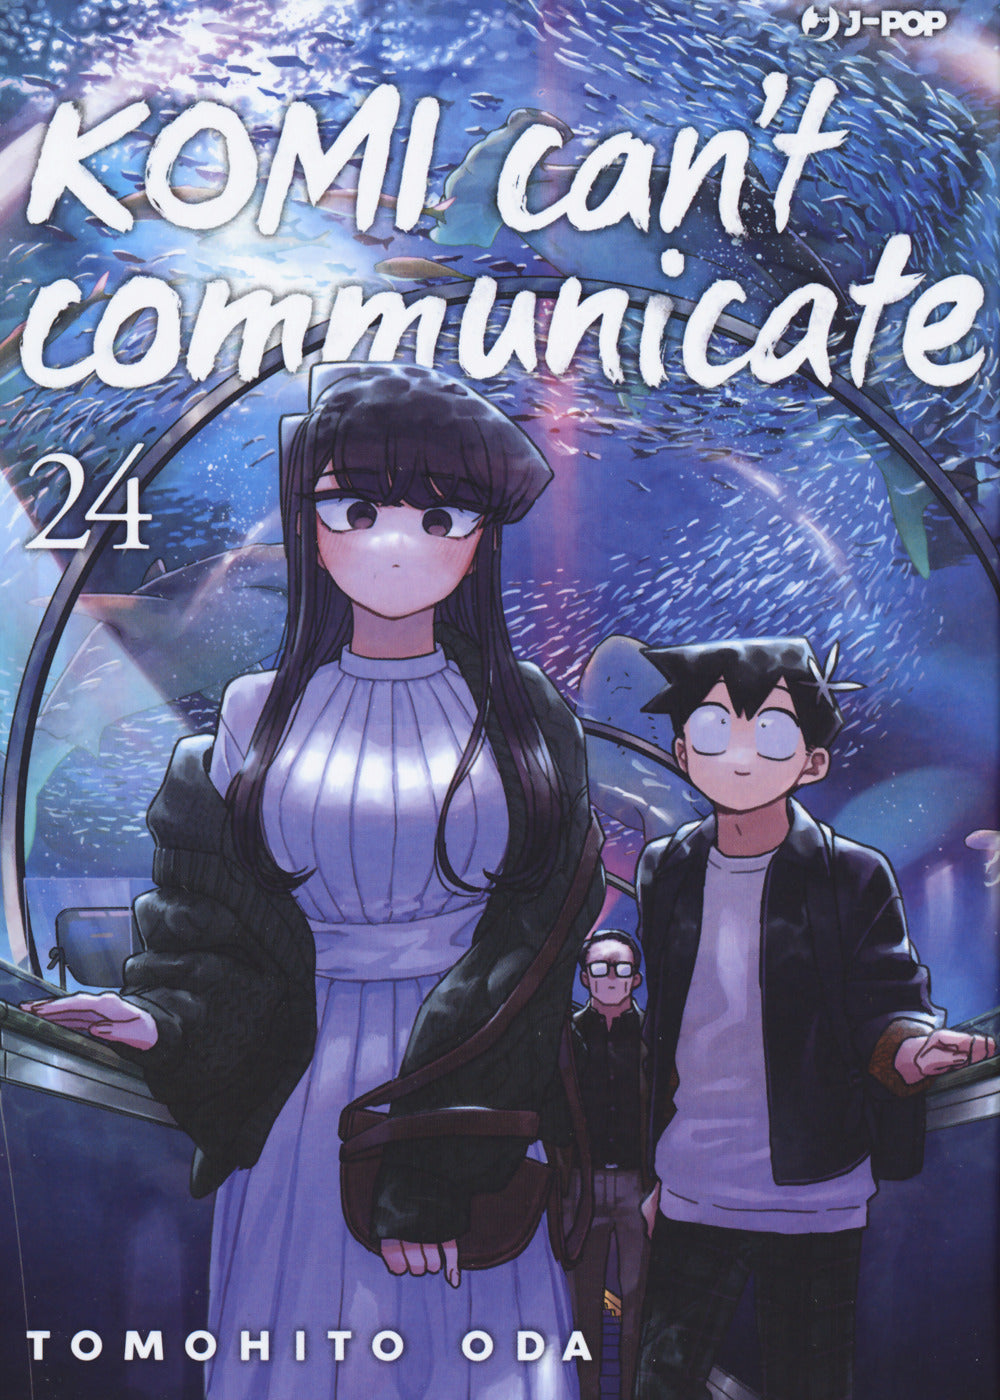 Komi can't communicate. Vol. 24.